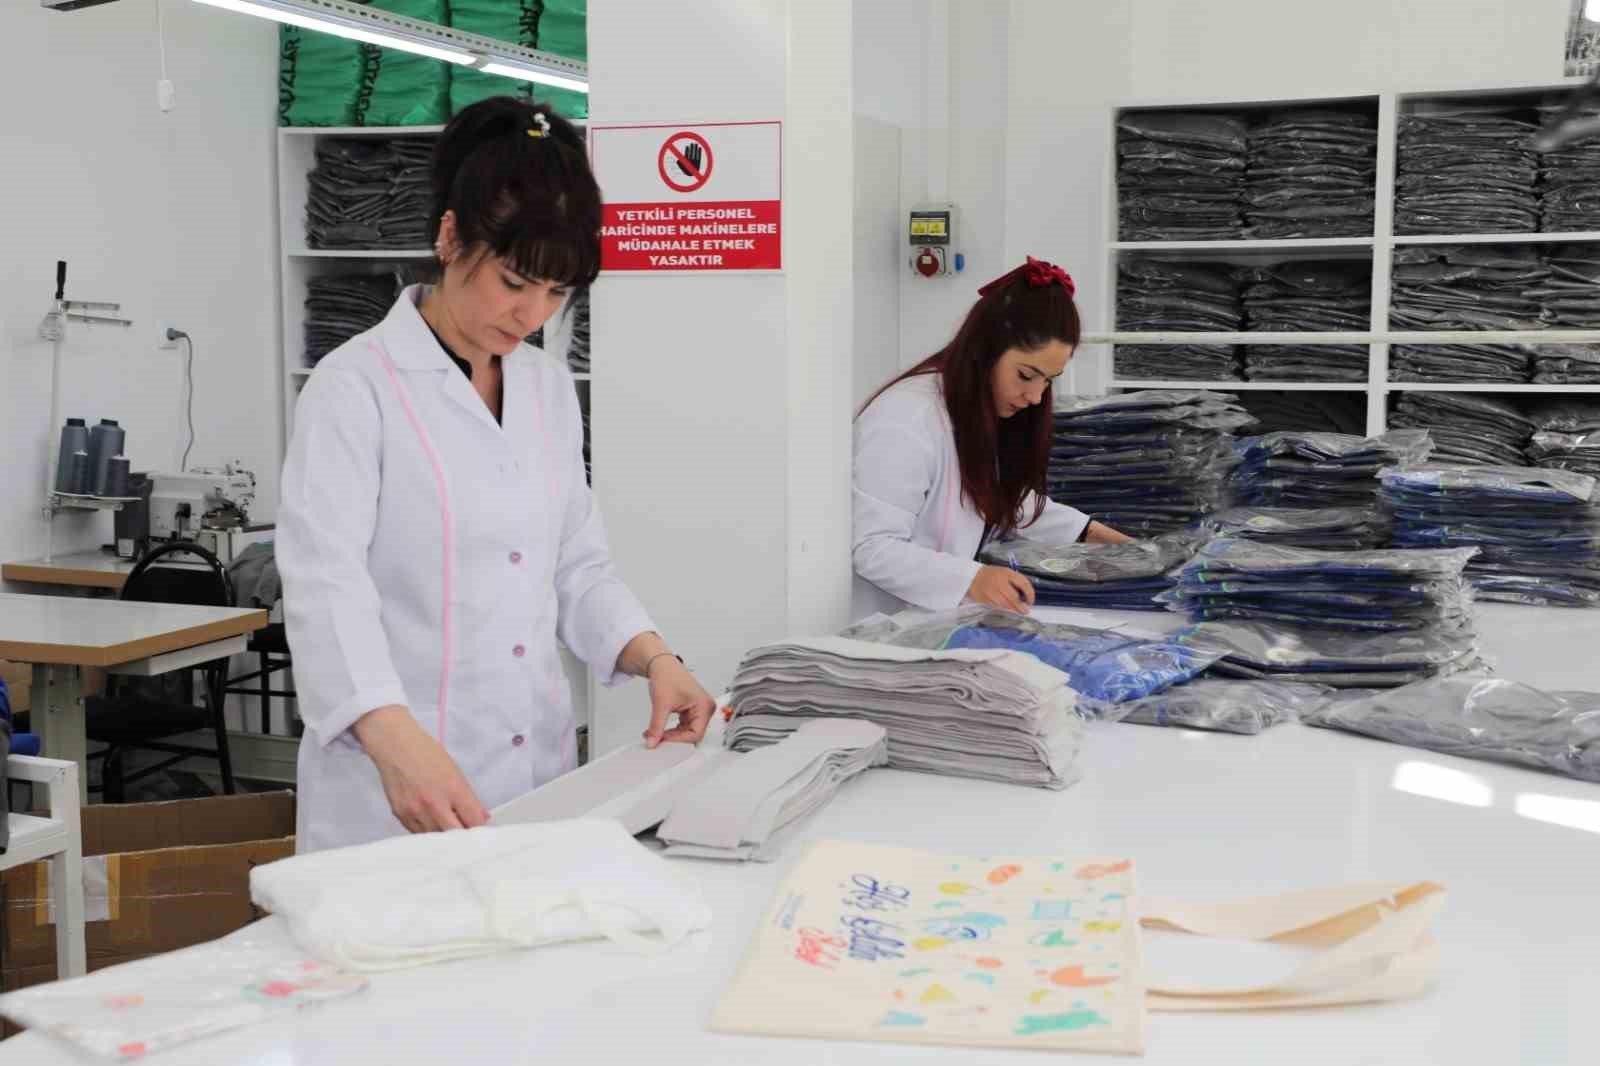 Odunpazarı tekstil atölyeleri 3 milyon 500 bin TL kâr etti